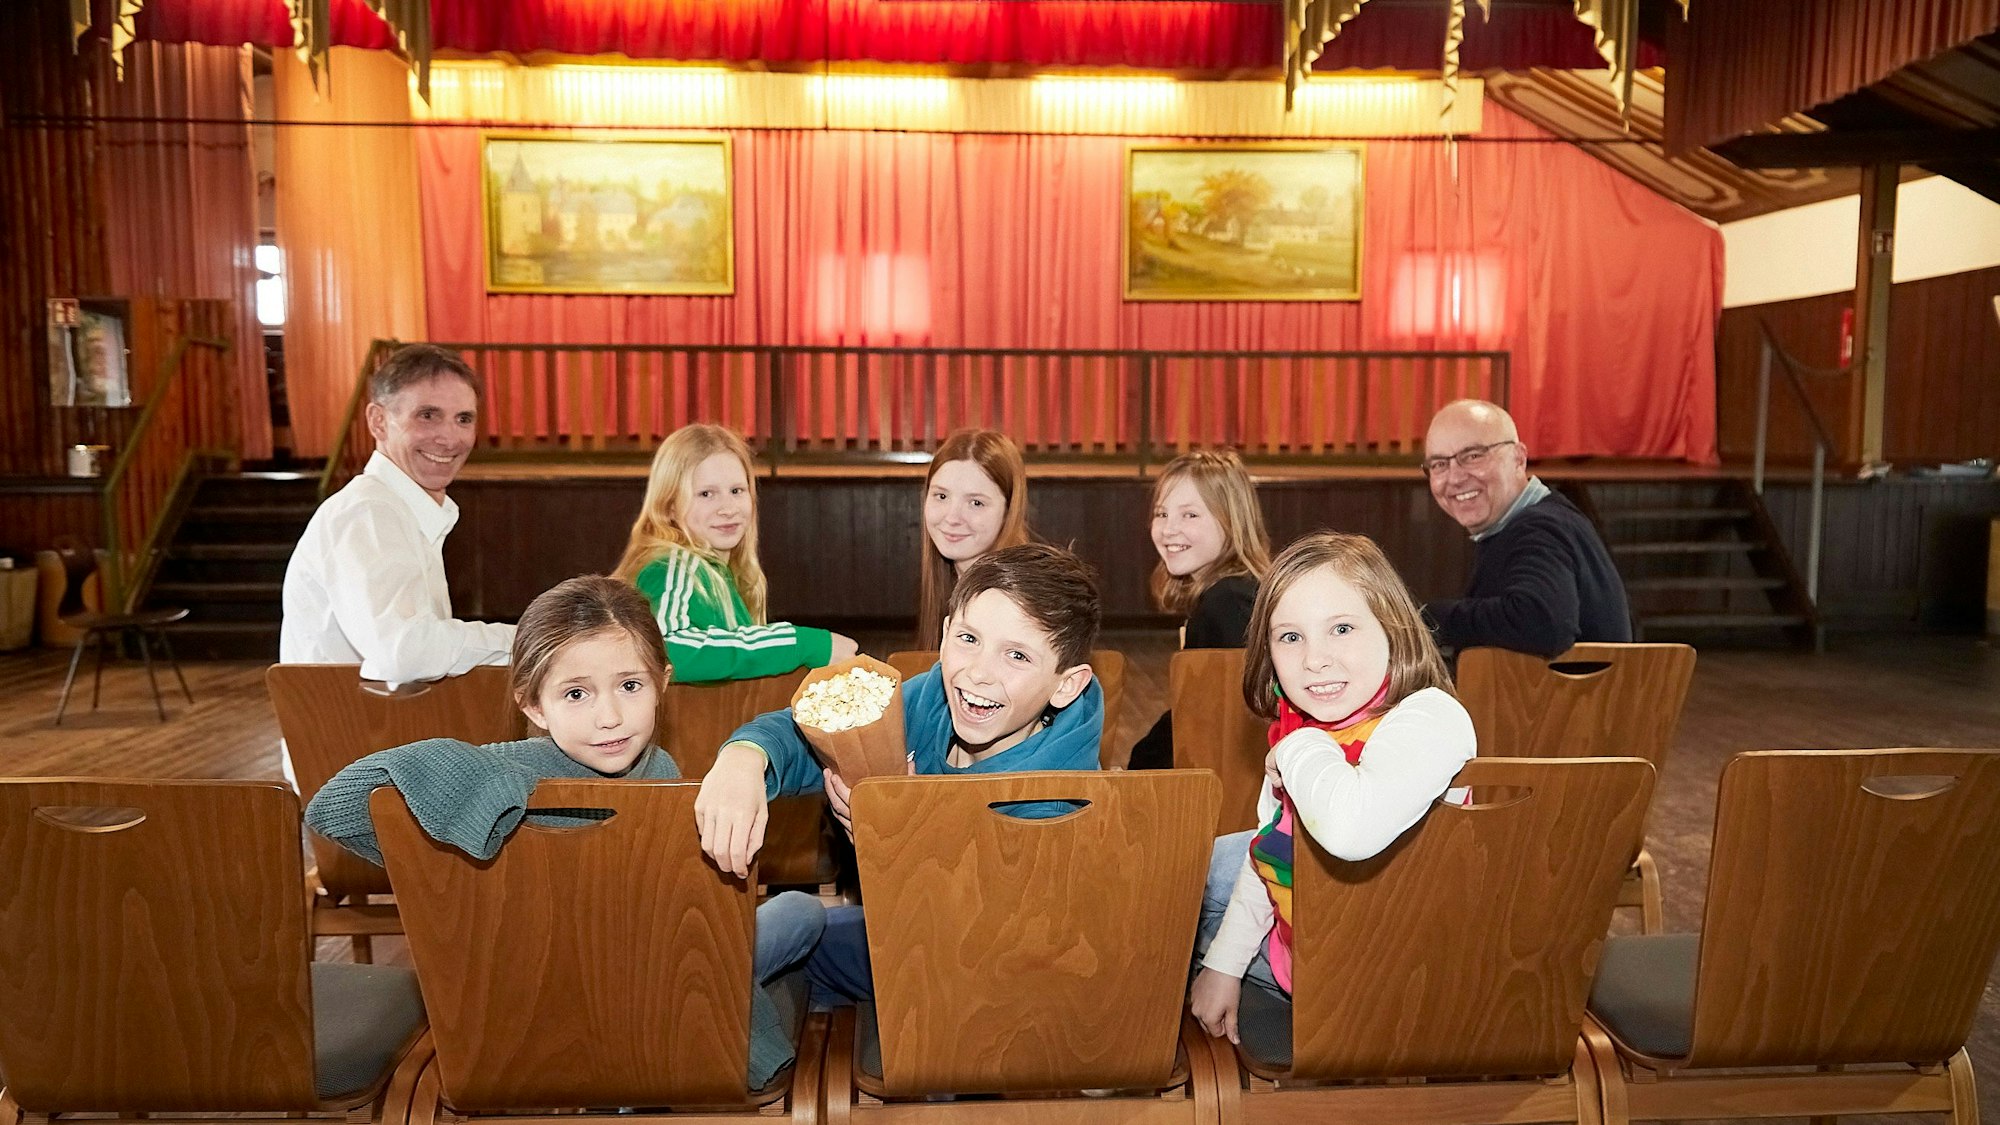 Sechs Kinder und zwei Herren haben auf den Stühlen im Dorfsaal Platz genommen. Ein Junge hält eine Tüte mit Popcorn in der Hand.